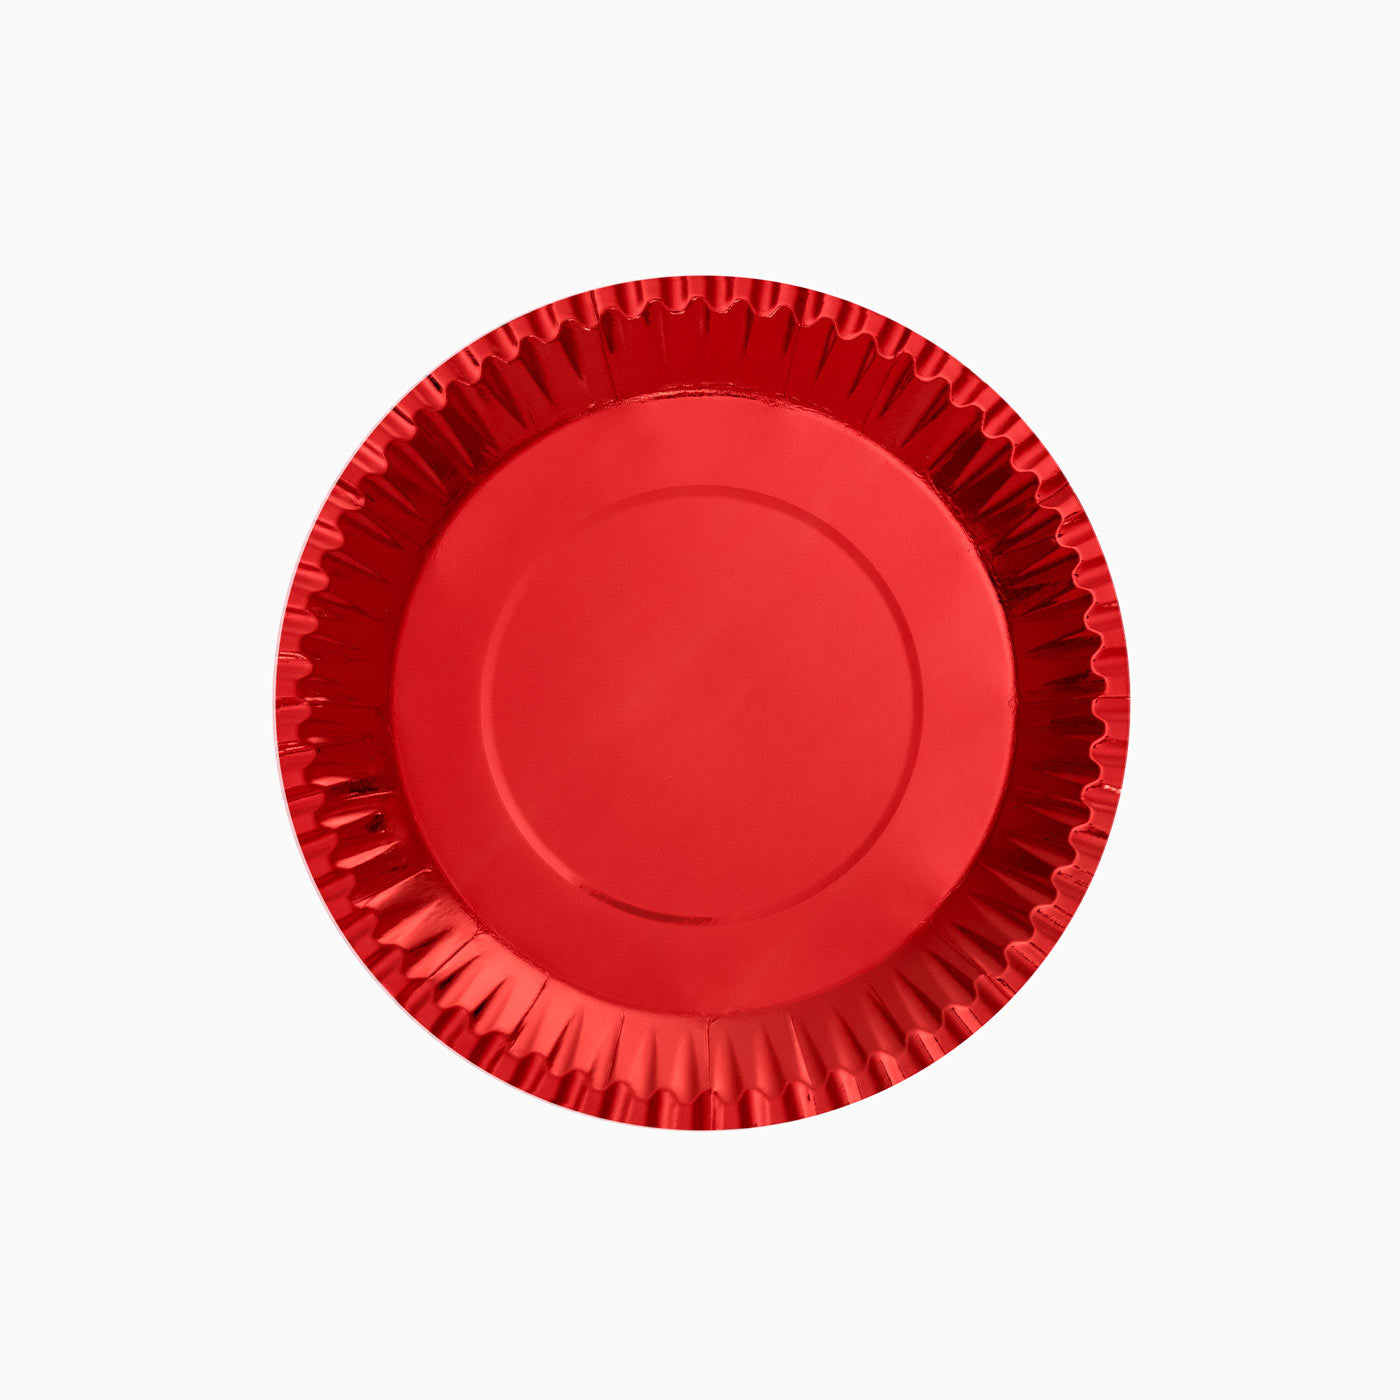 Cartone piatto piatto metallico Ø18 cm rosso